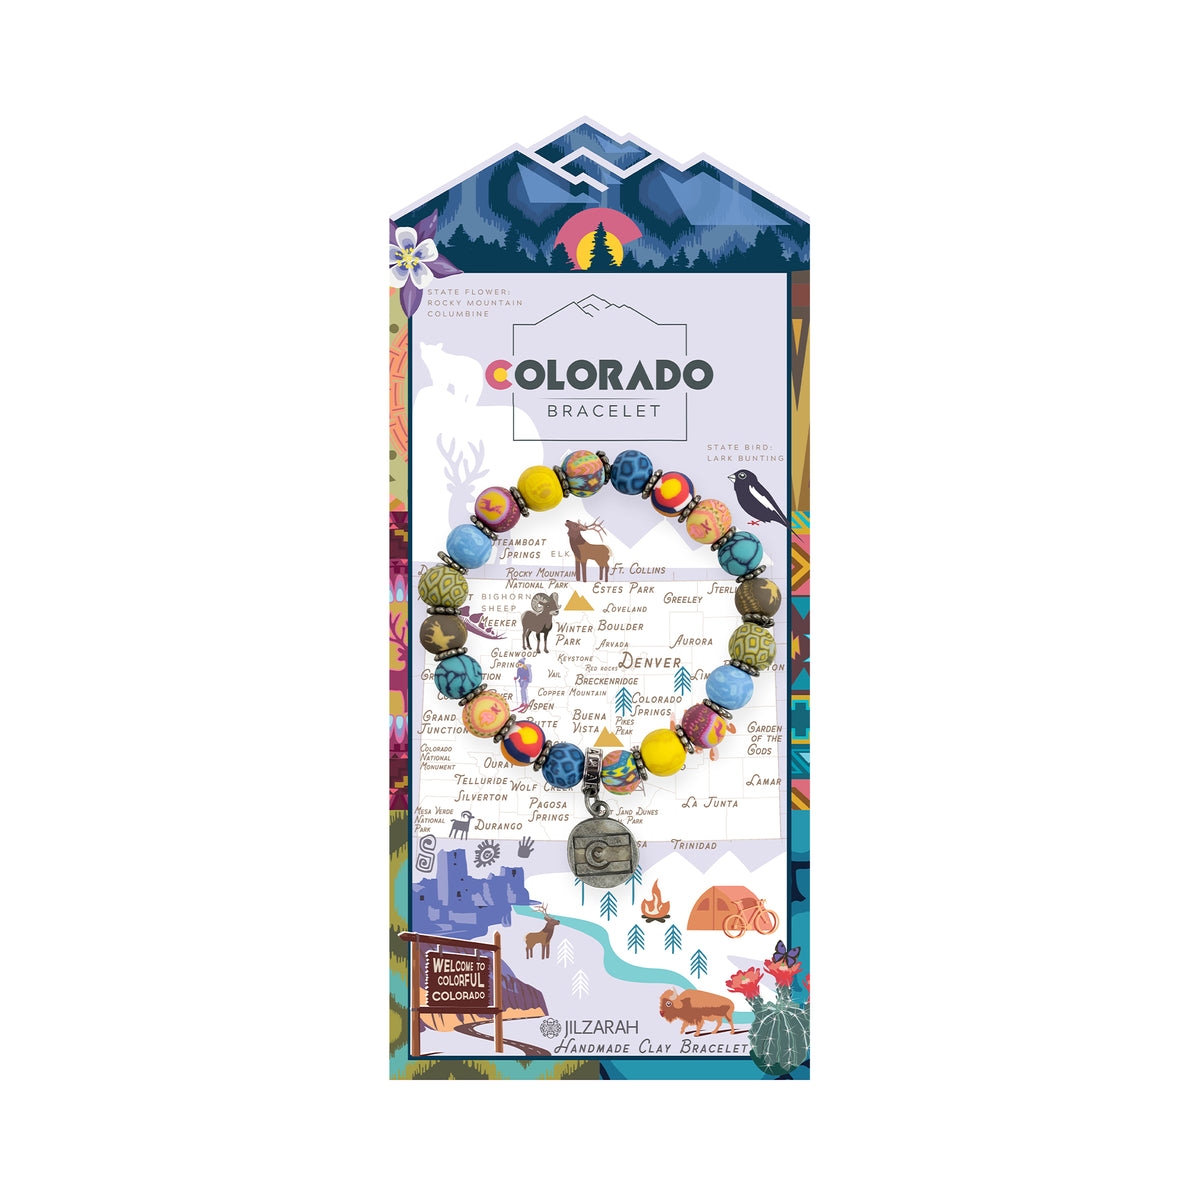 Colorado Places We Love Bracelet